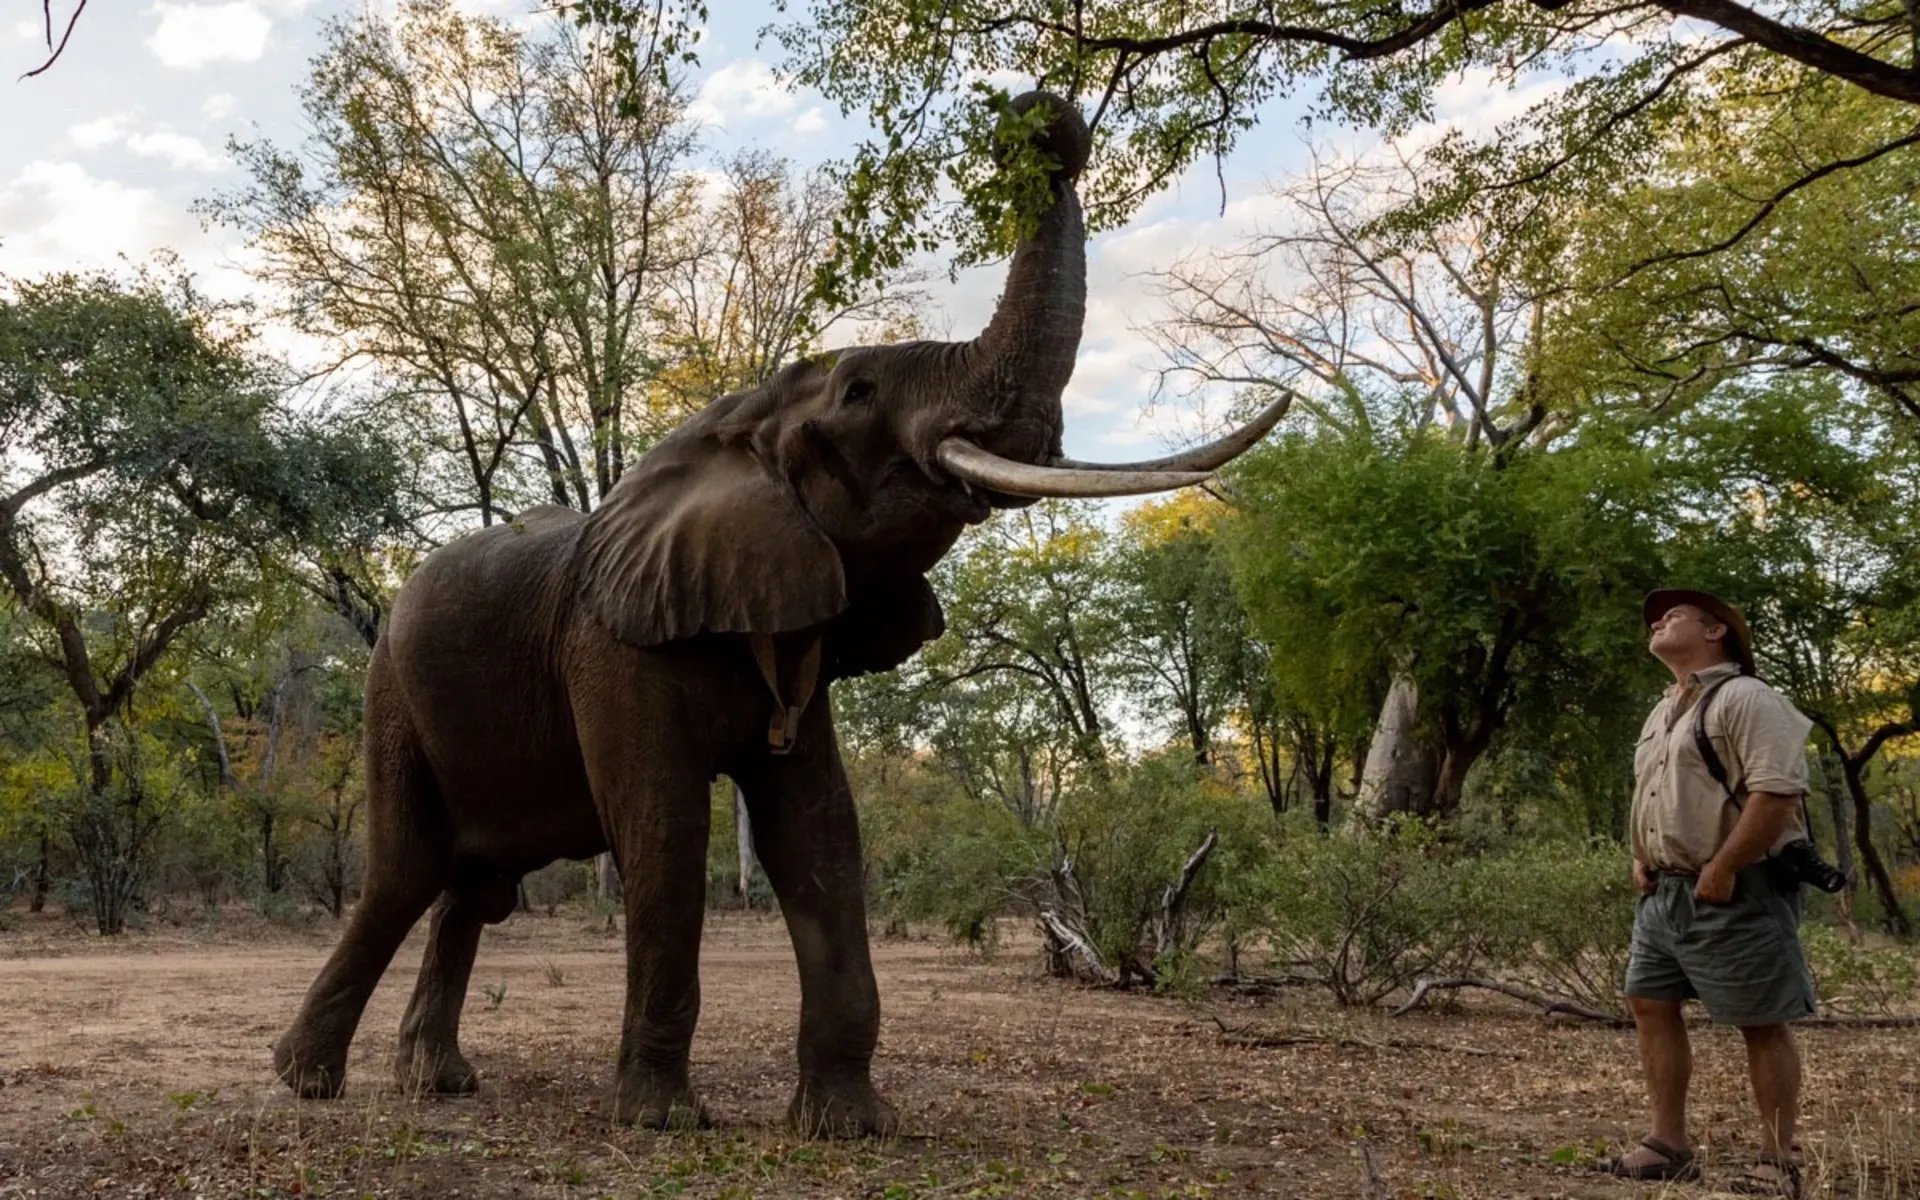 Elephant_-_Bushlife_Safaris_Activities_fqjxgr-1